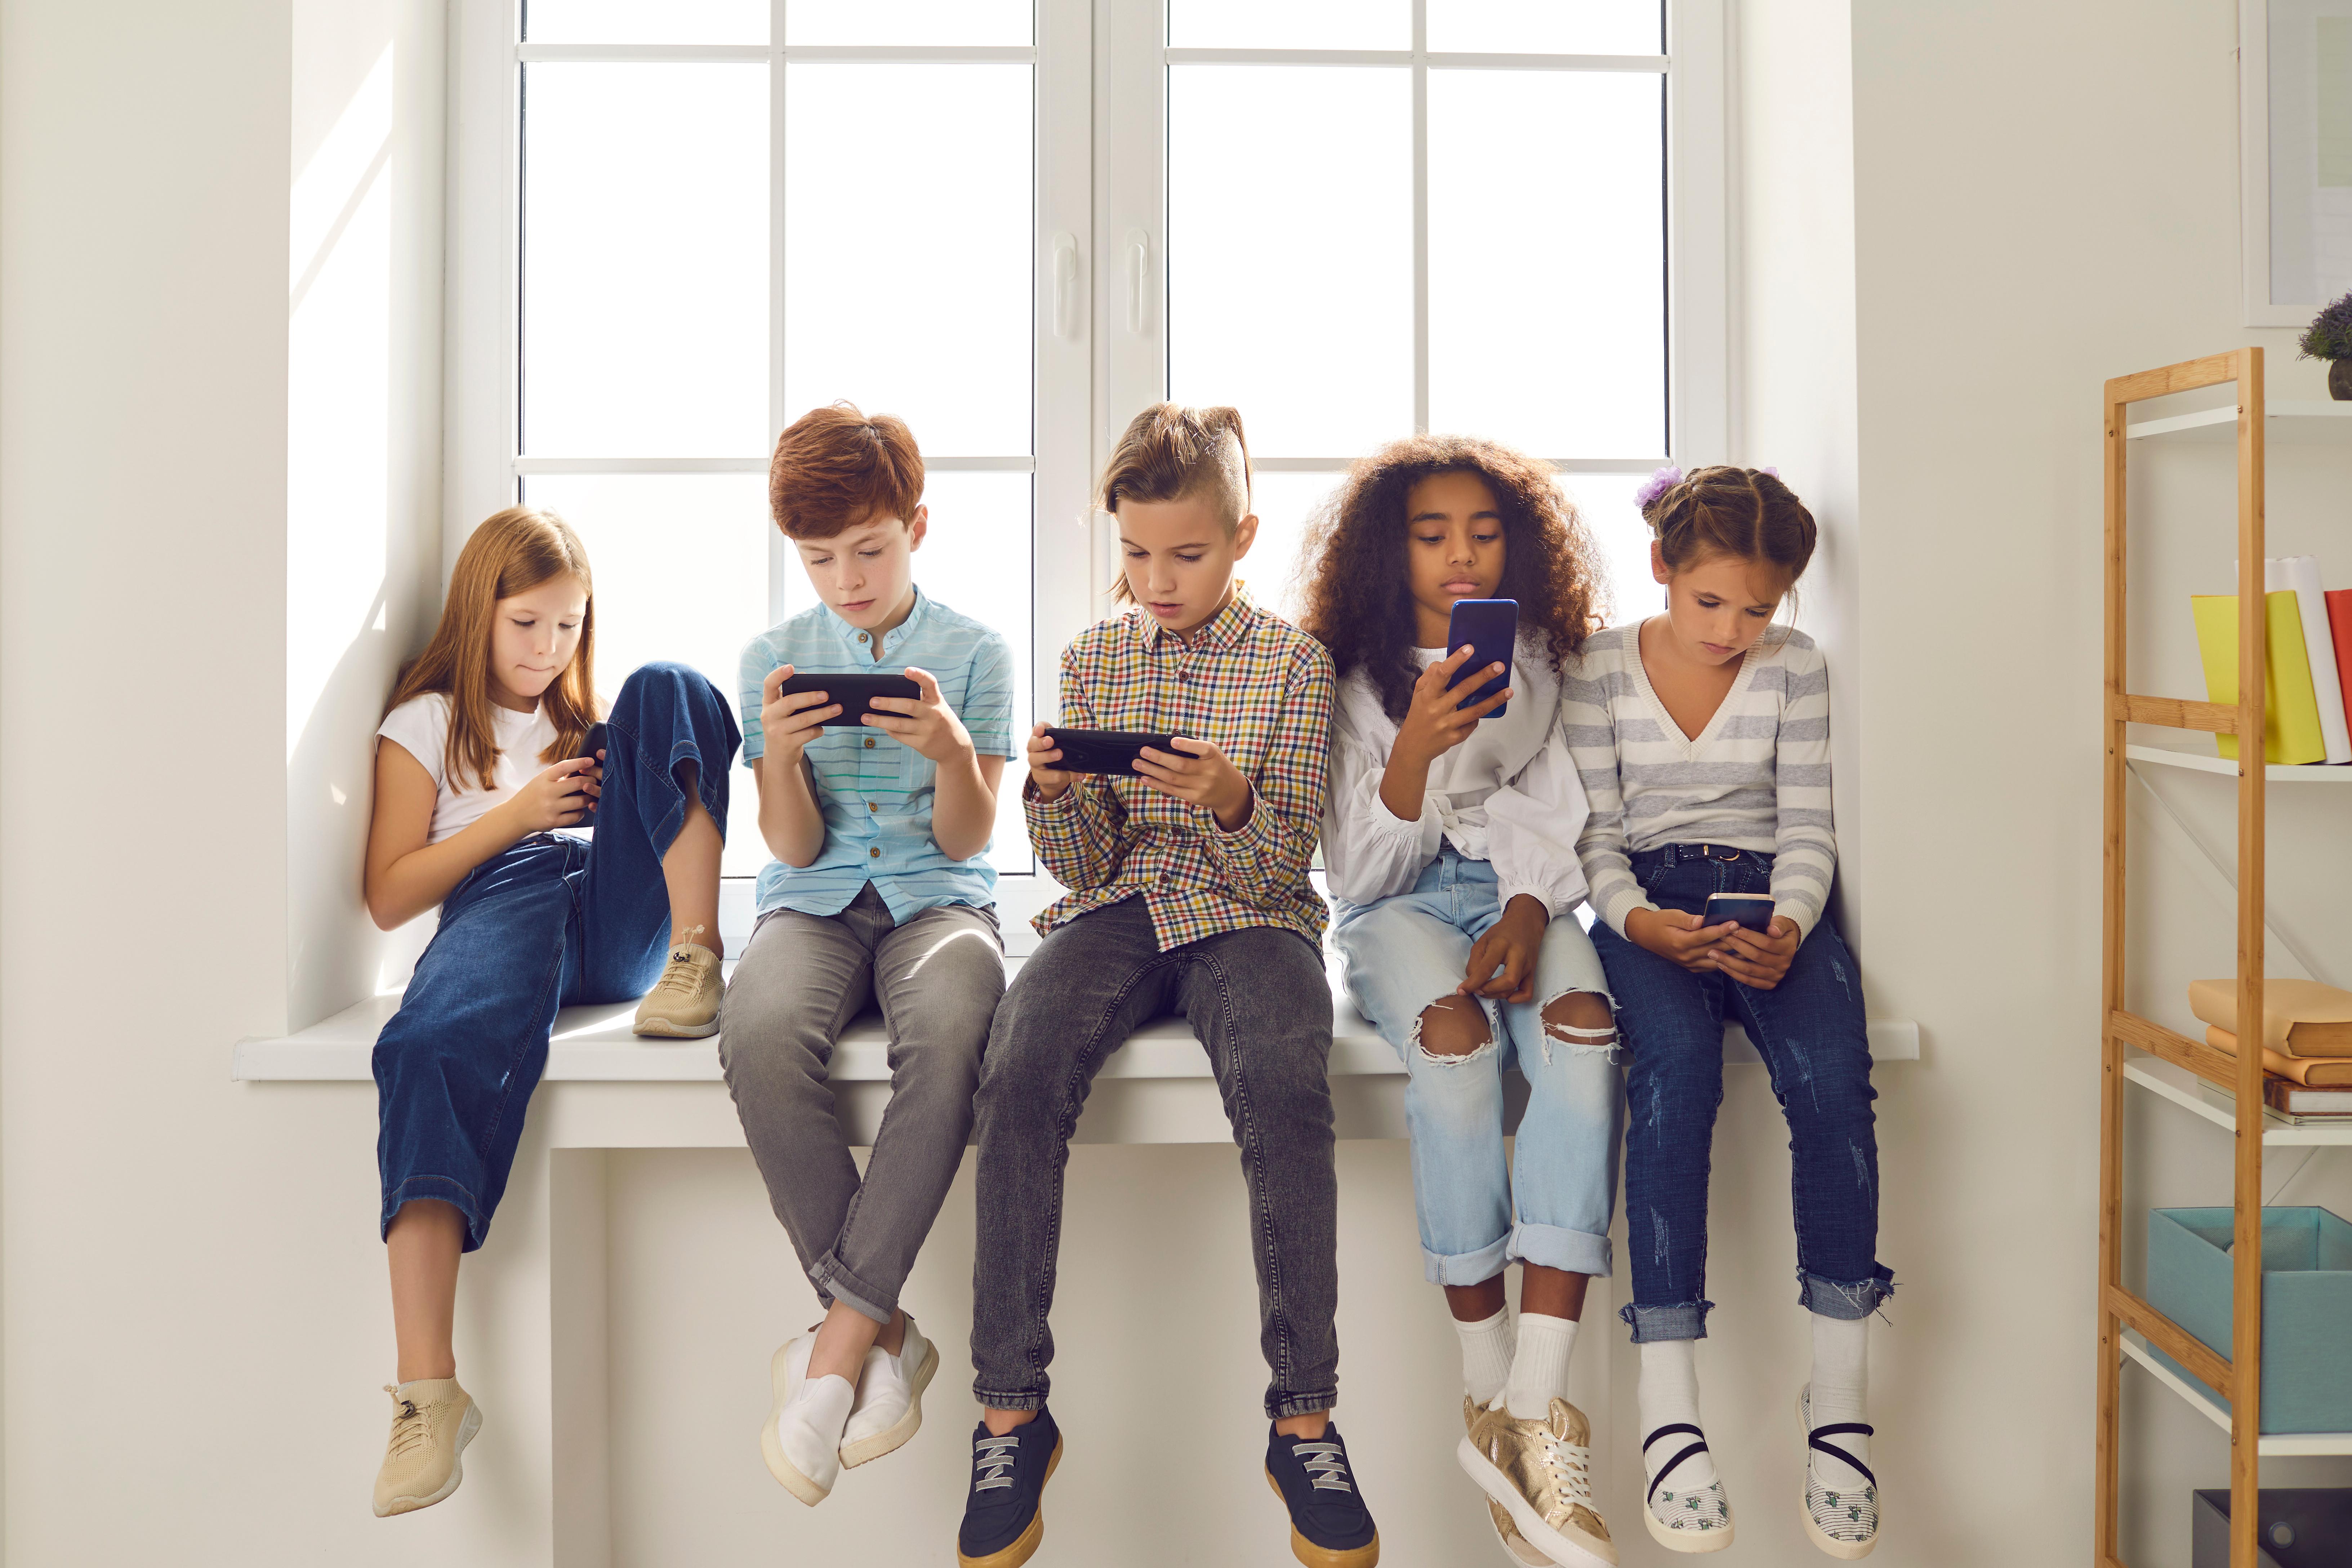 Mobiles Lernen – Integrieren Sie digitale Medien erfolgreich an Ihrer Schule